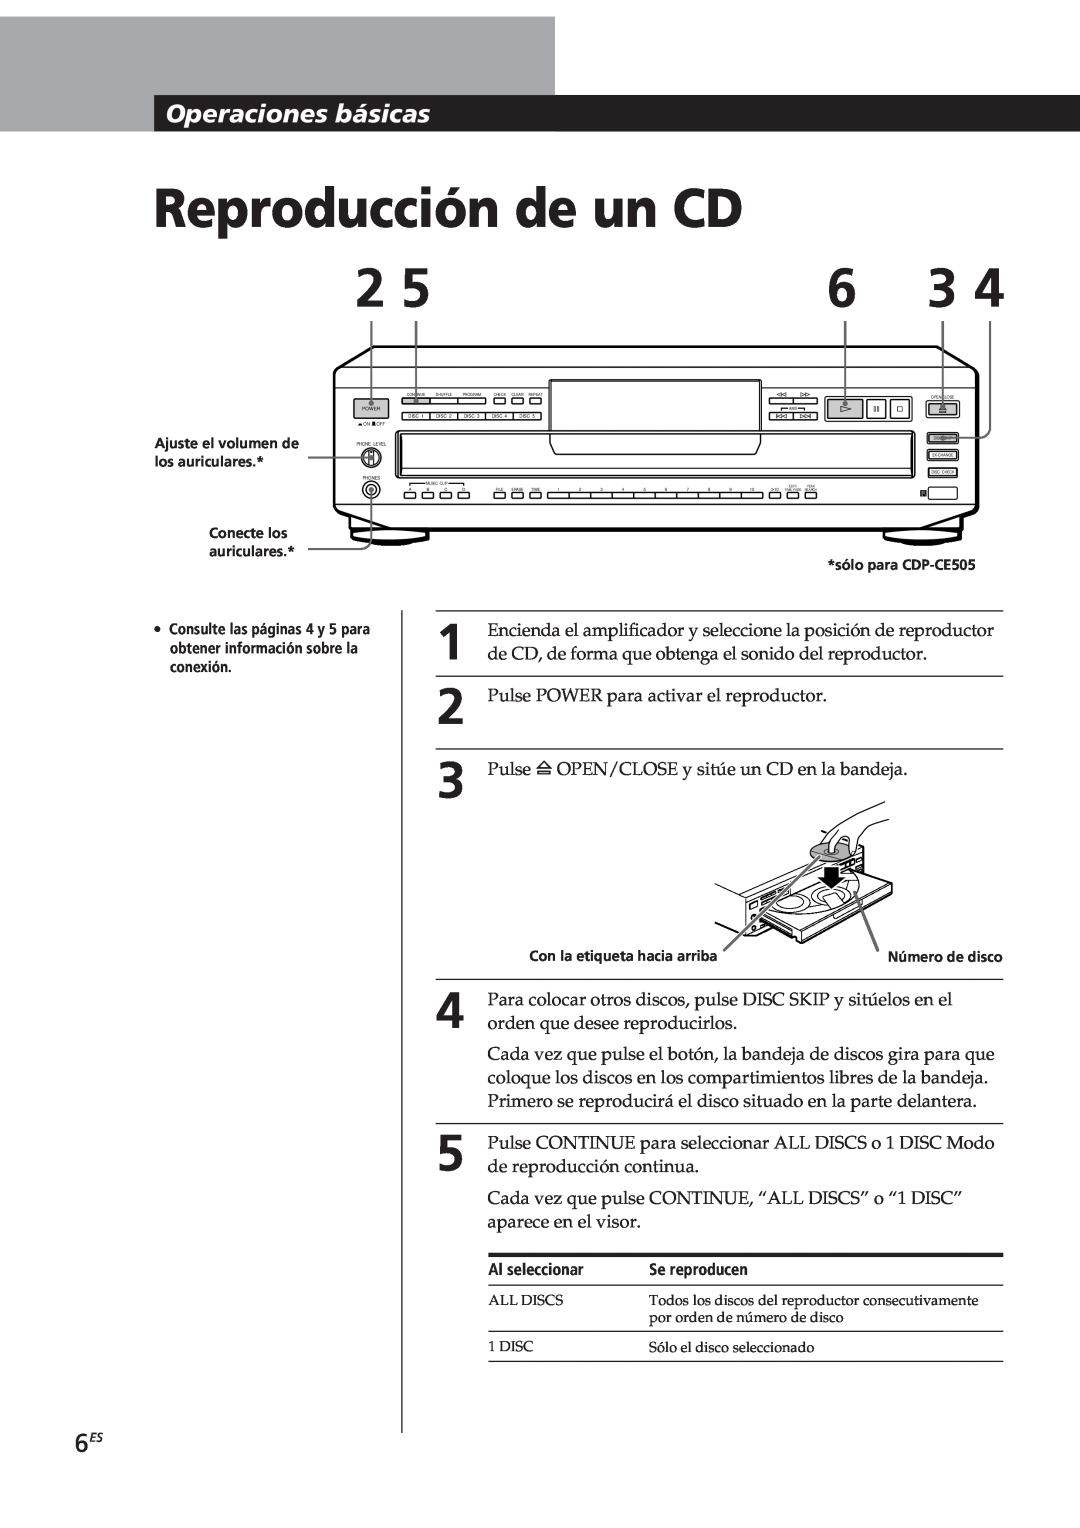 Sony CDP-CE505, CDP-CE305, CDP-CE405, CDP-C661 manual Reproducción de un CD, Operacionesbásicas 